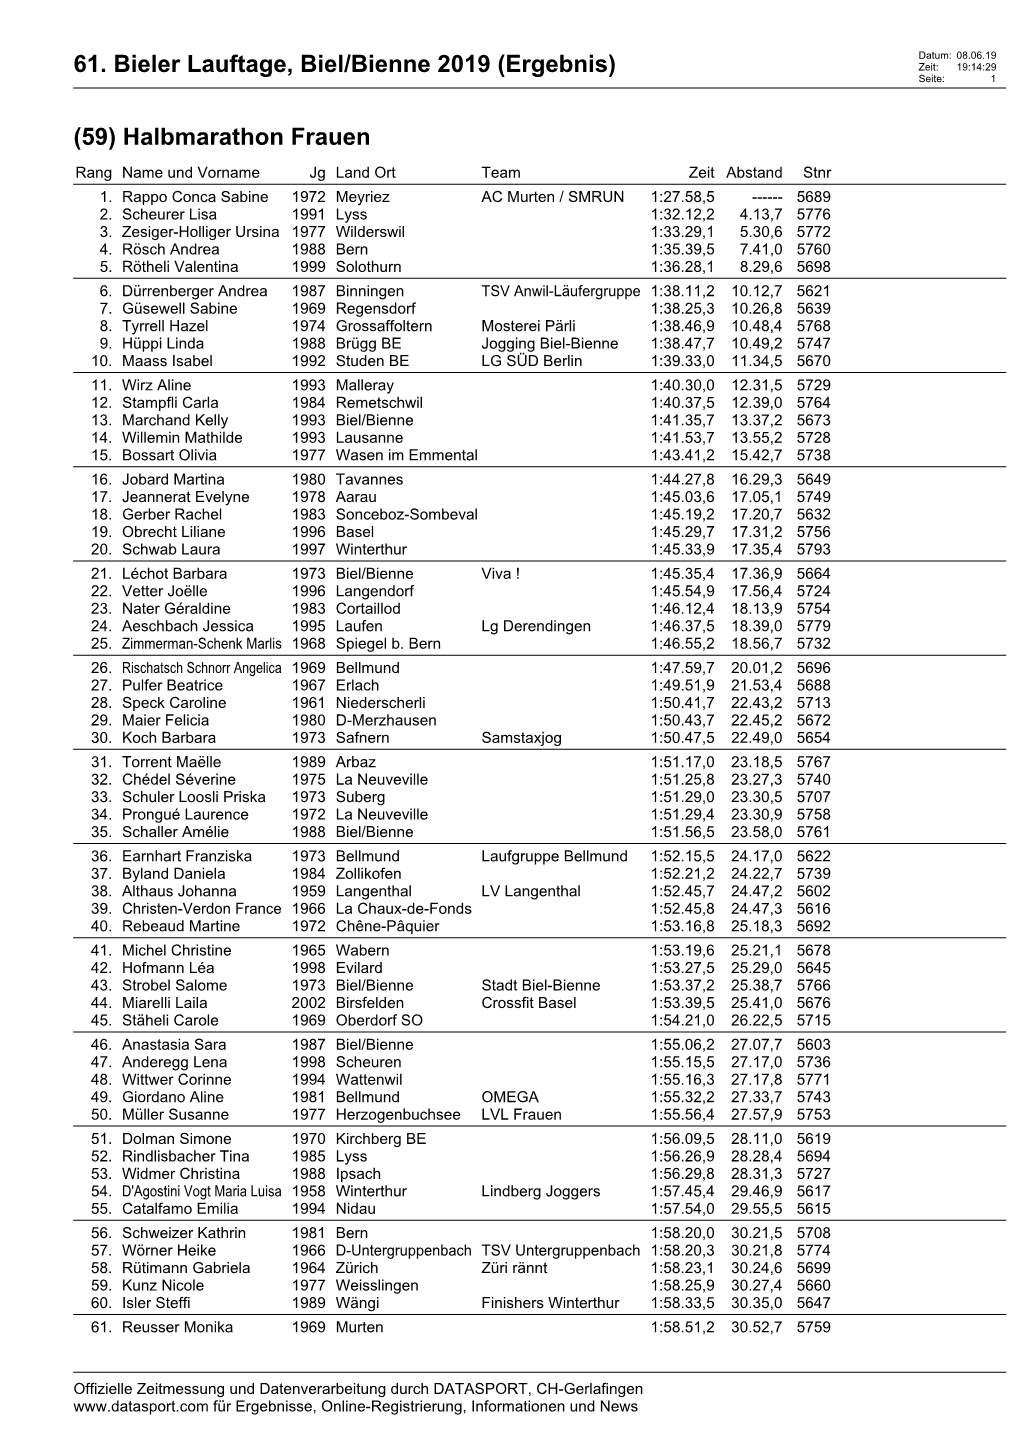 61. Bieler Lauftage, Biel/Bienne 2019 (Ergebnis) (59) Halbmarathon Frauen